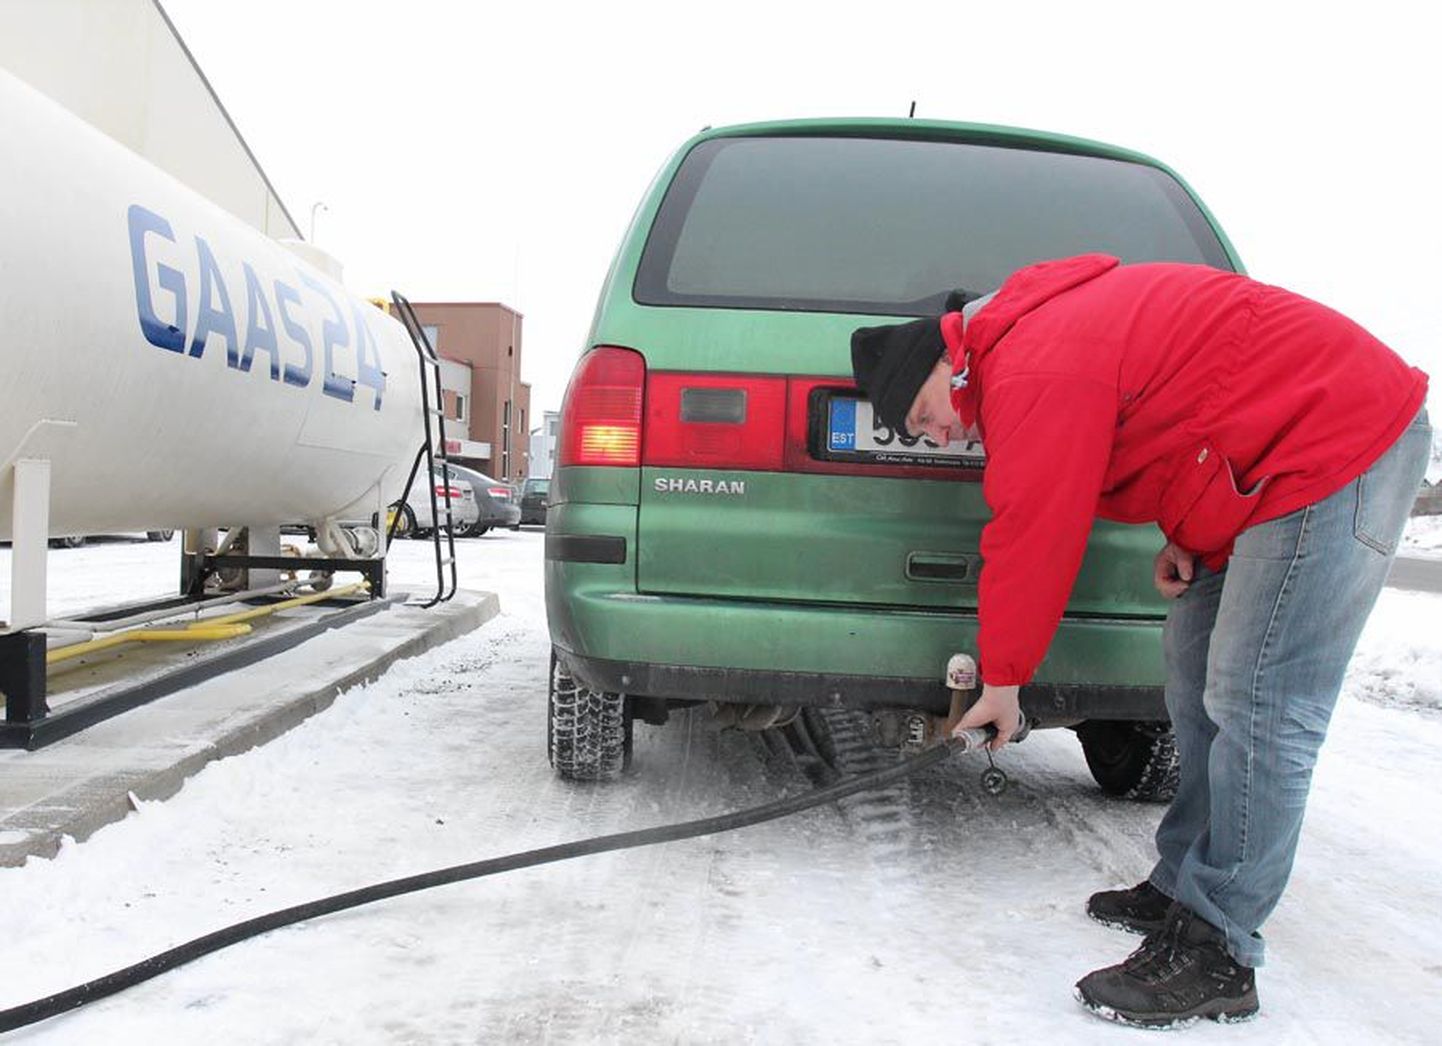 Lehola autokeskuse juhataja Hanno Lõpp nimetab gaasi tankimist bensiini võtmisest vaid veidi keerulisemaks. Õige liigutuse saab kiiresti kätte.